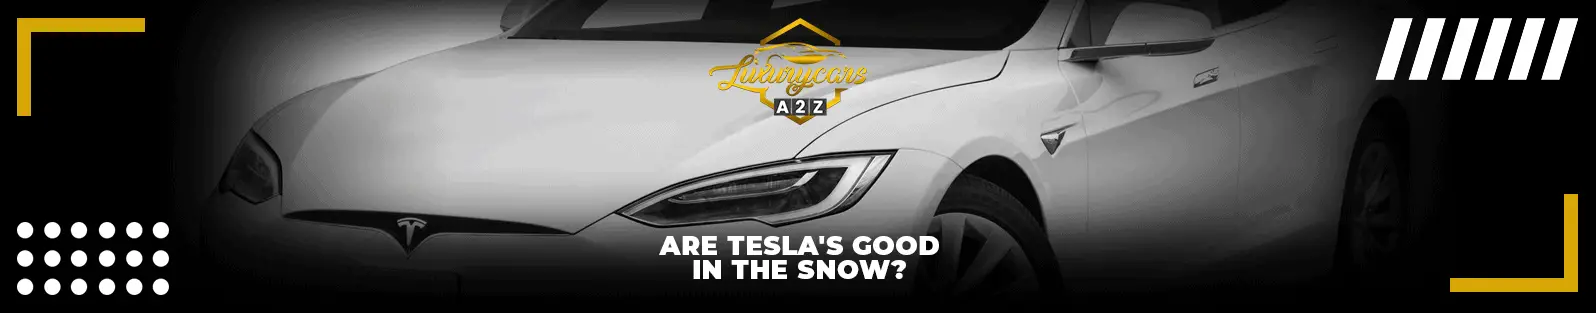 Les Tesla sont-elles bonnes dans la neige ?